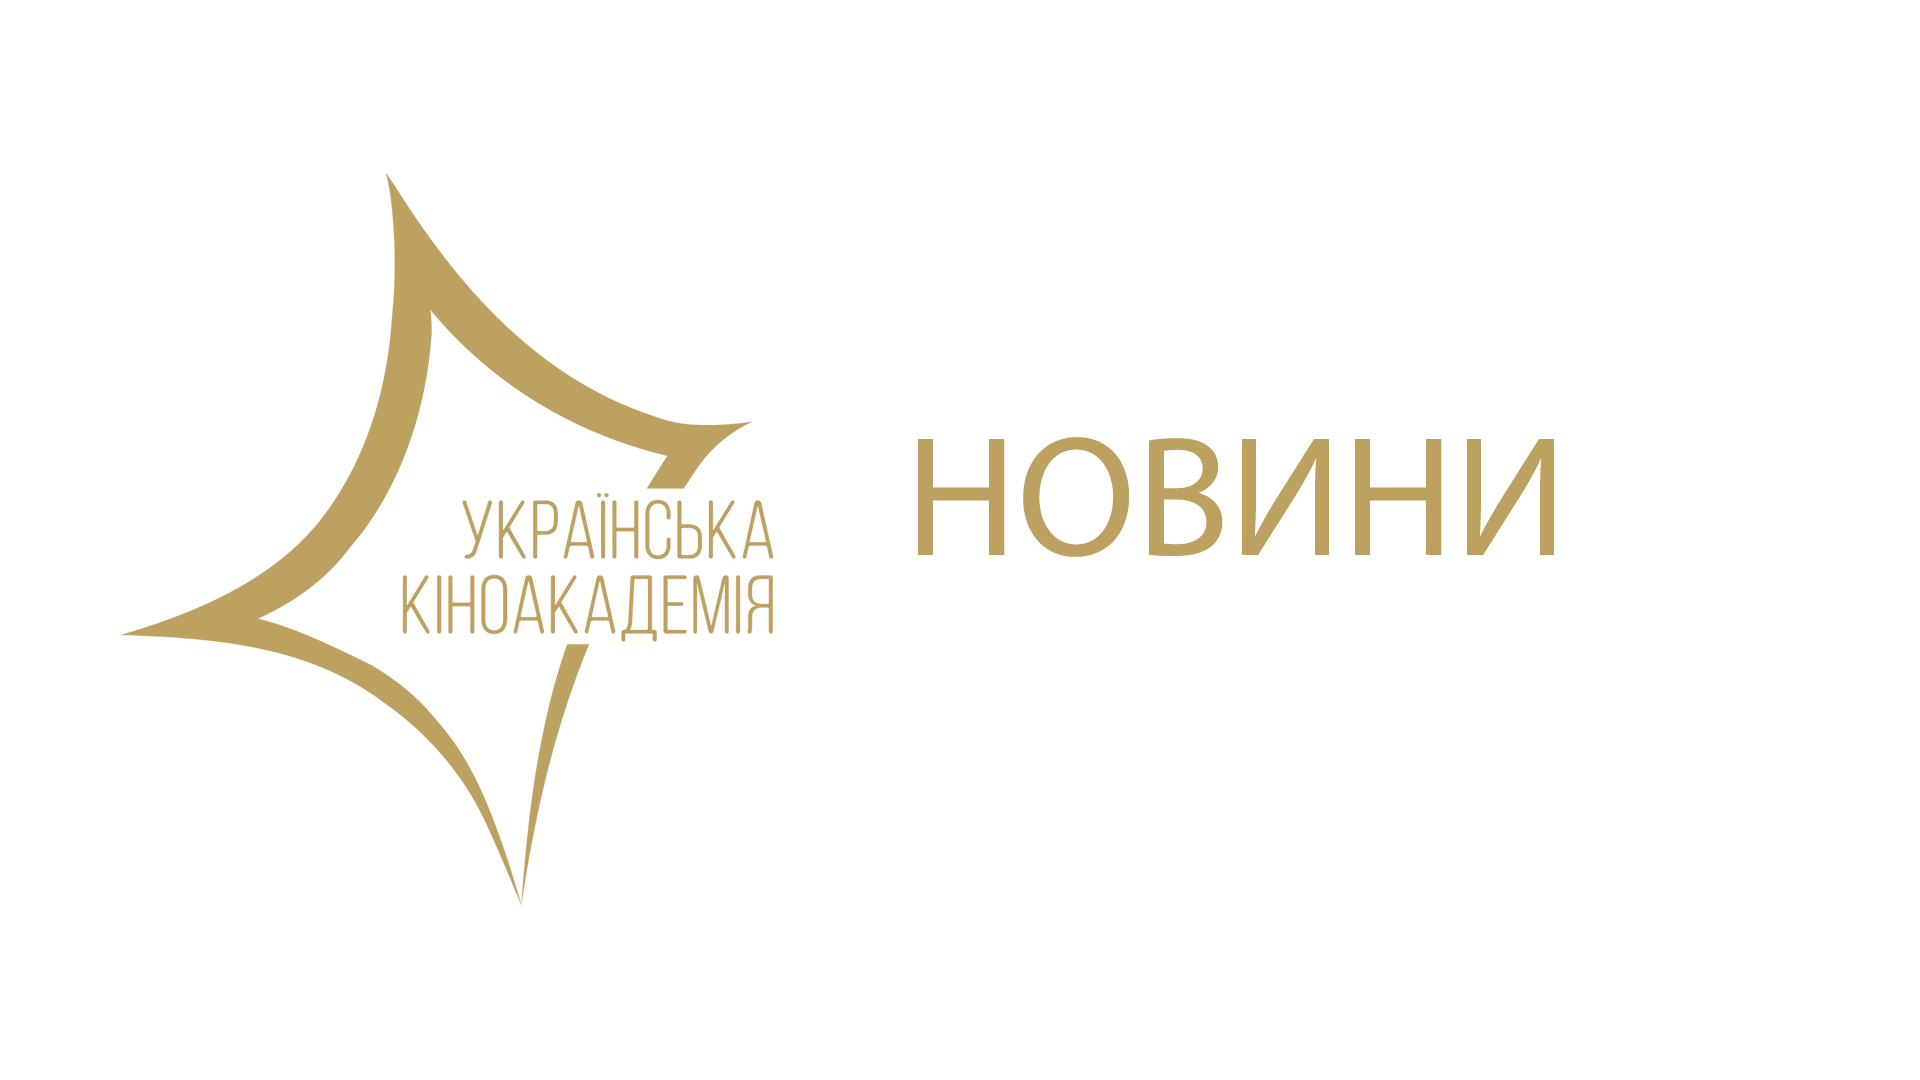 З 3 грудня і до 21 січня прийматимуться заявки на участь у конкурсі Третьої Національної кінопремії “Золота Дзиґа”